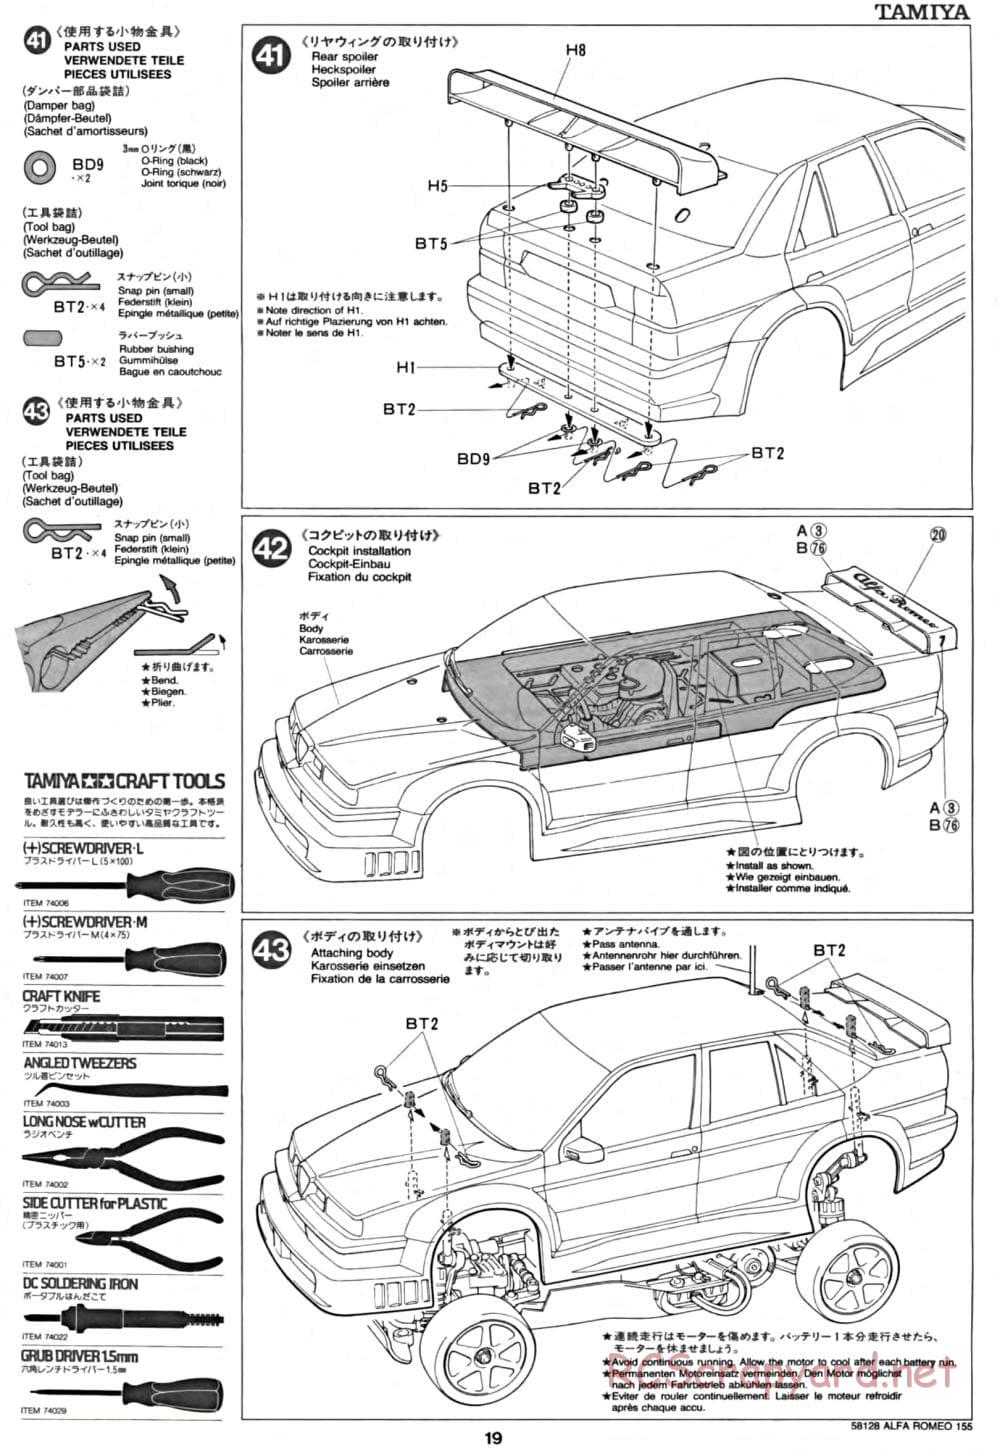 Tamiya - Alfa Romeo 155 V6 TI - TA-02 Chassis - Manual - Page 19